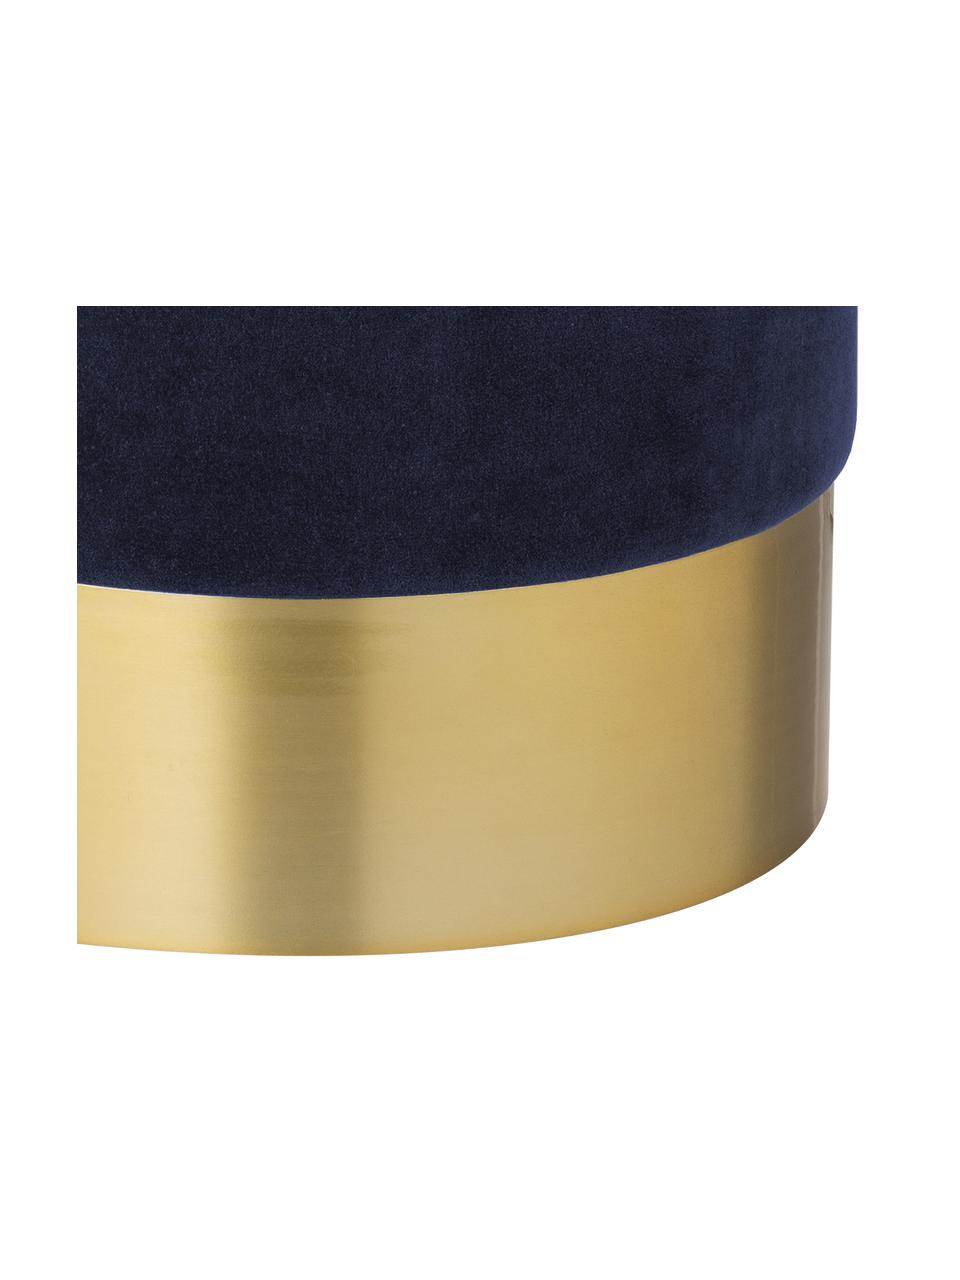 Puf z aksamitu Harlow, Tapicerka: aksamit bawełniany, Marynarski granat, odcienie złotego, Ø 38 x W 42 cm